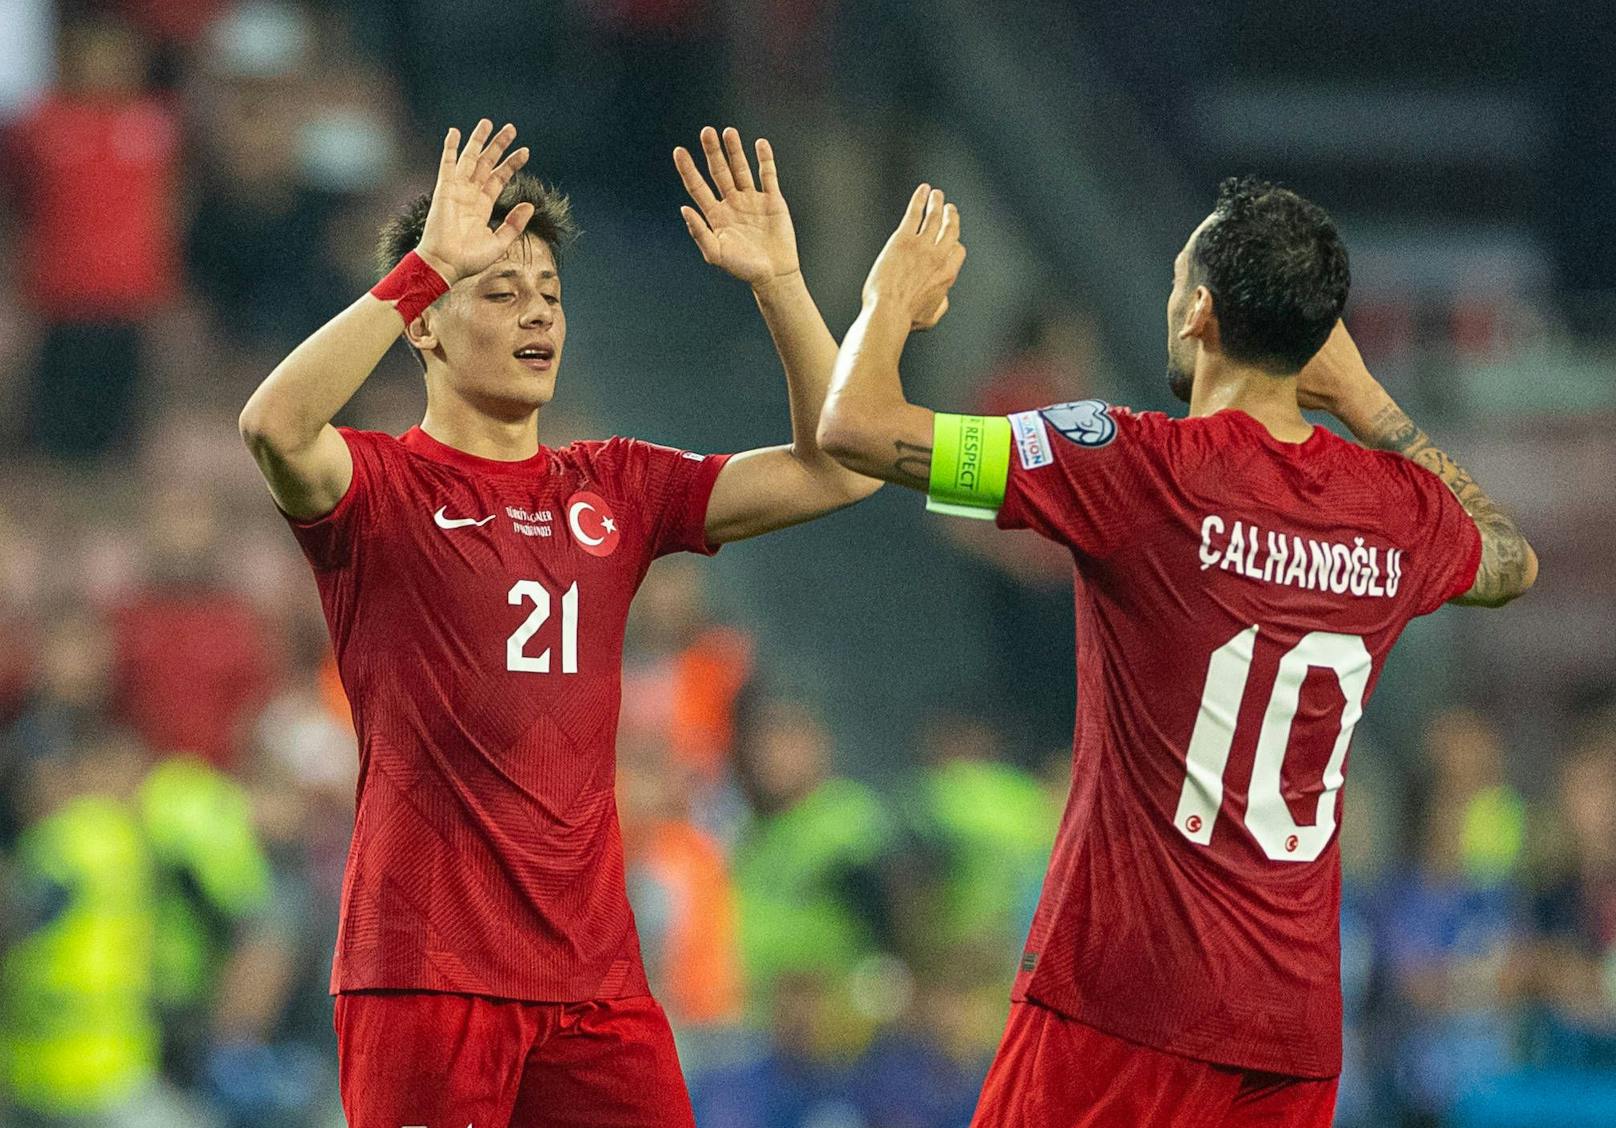 Salzburg pokert mit Real und Barcelona um Türkei-Juwel